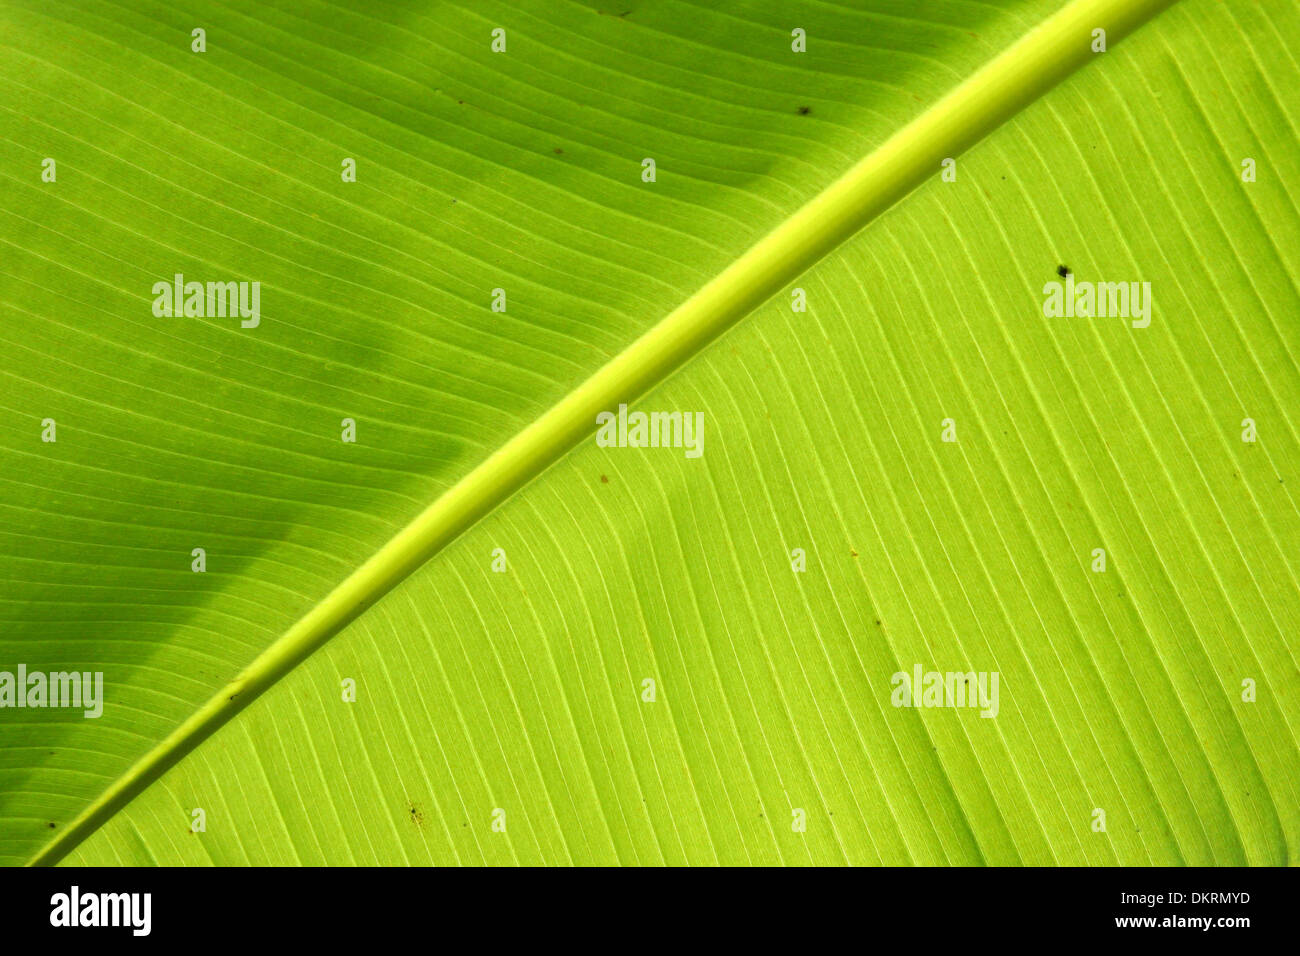 Nahaufnahme von einem hellen grünen Blatt, zeigen die Venen & bunte Farben. Stockfoto